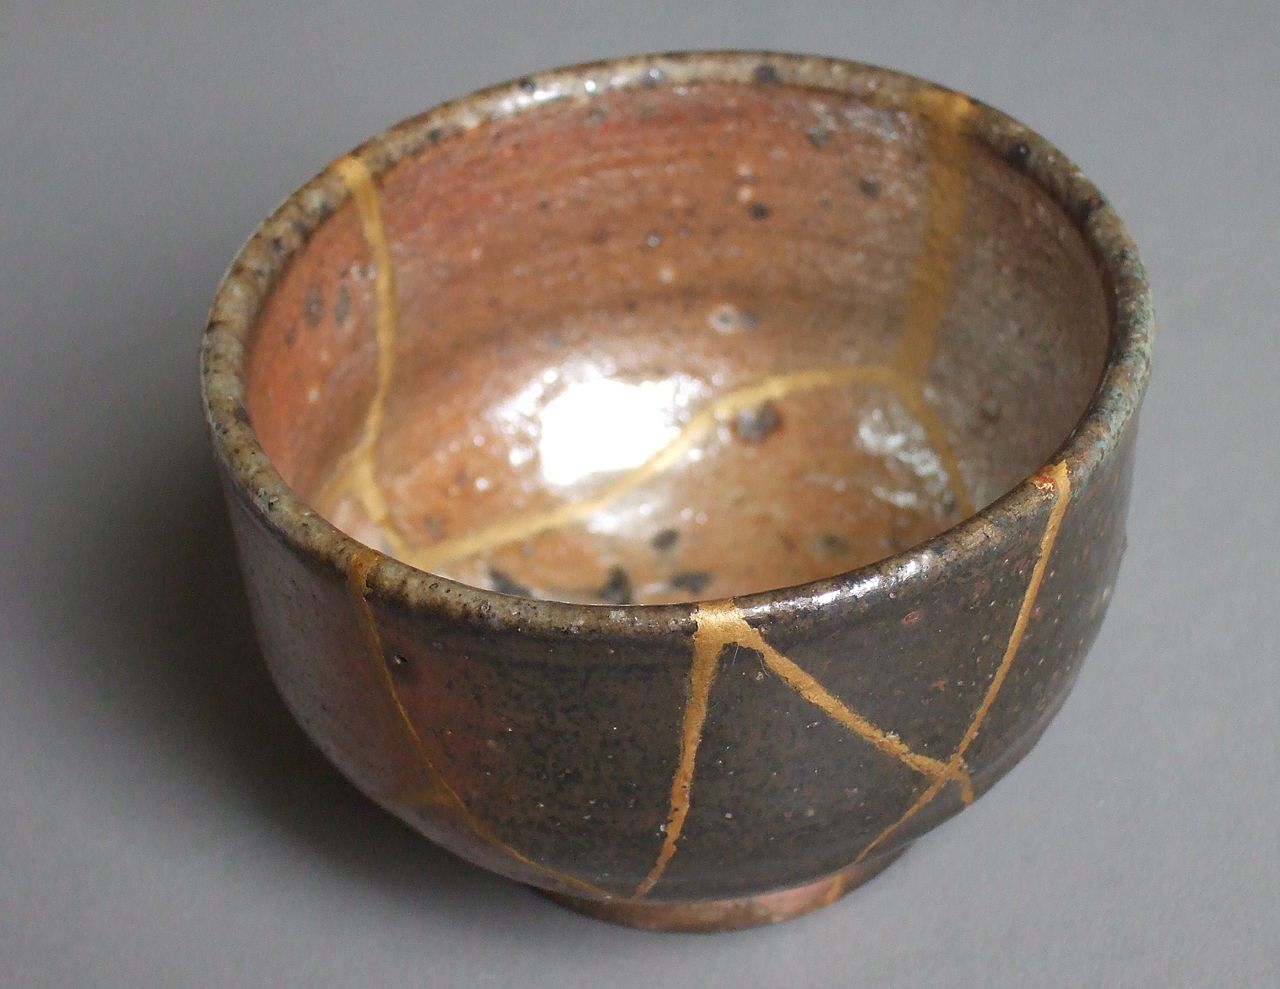 Отреставрированная чаша (автор: Haragayato, лицензия СС)